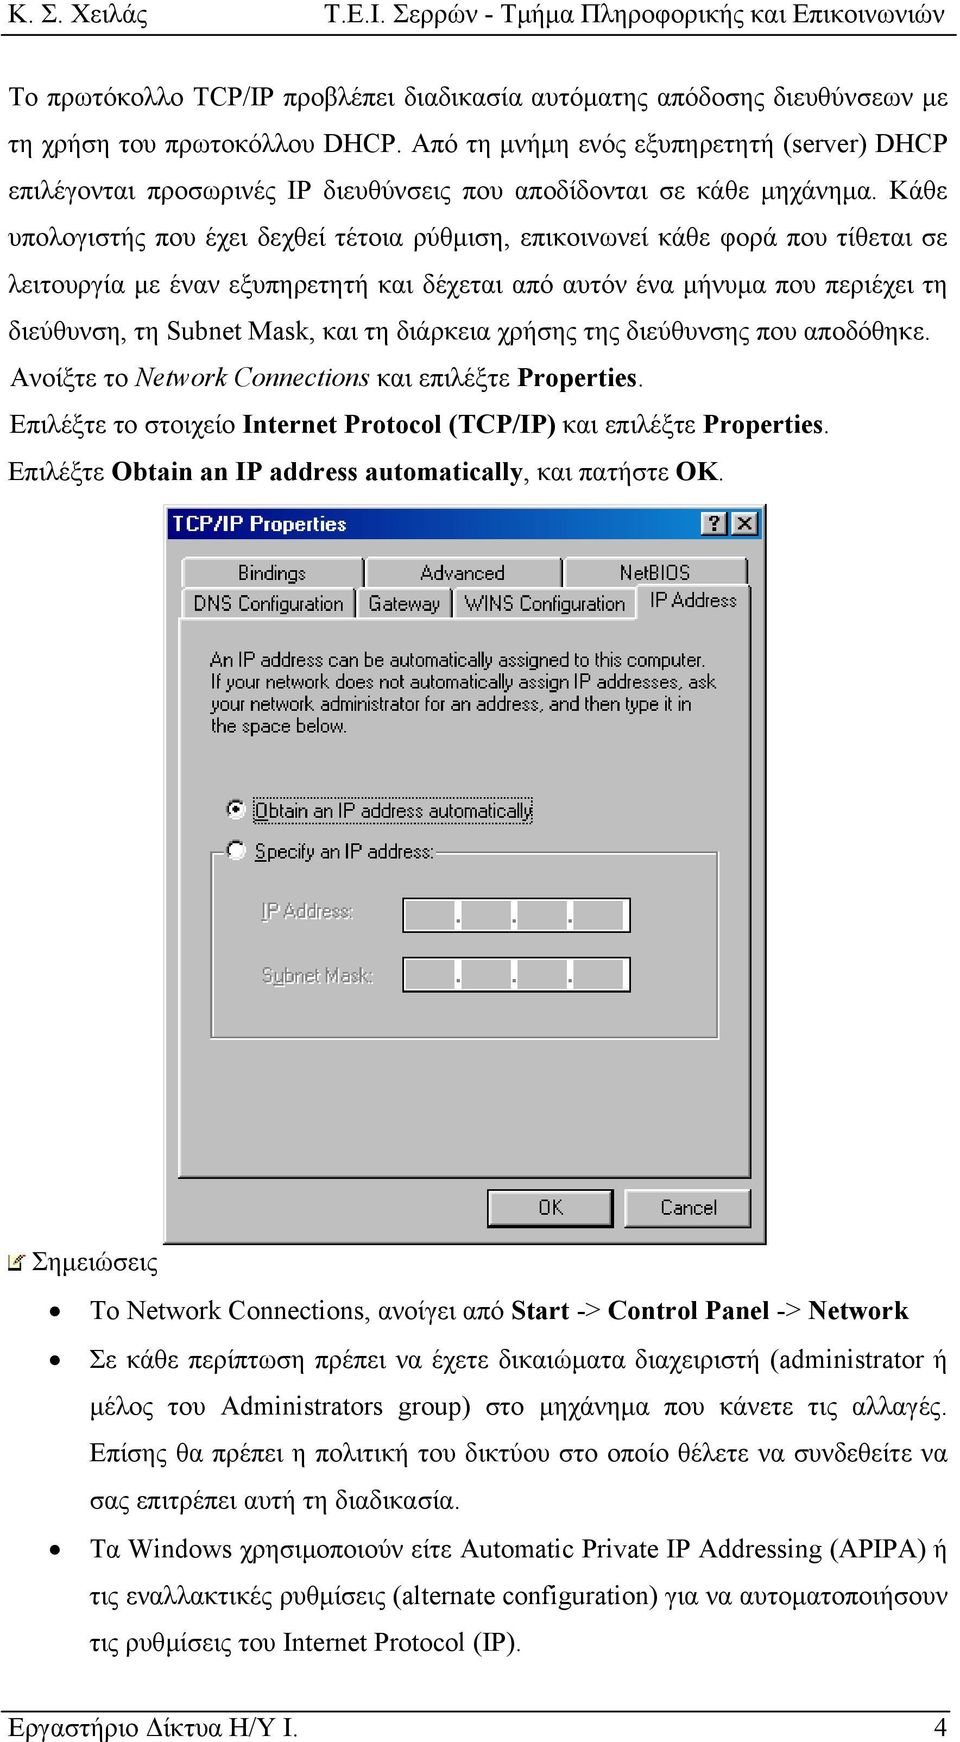 Κάθε υπολογιστής που έχει δεχθεί τέτοια ρύθµιση, επικοινωνεί κάθε φορά που τίθεται σε λειτουργία µε έναν εξυπηρετητή και δέχεται από αυτόν ένα µήνυµα που περιέχει τη διεύθυνση, τη Subnet Mask, και τη